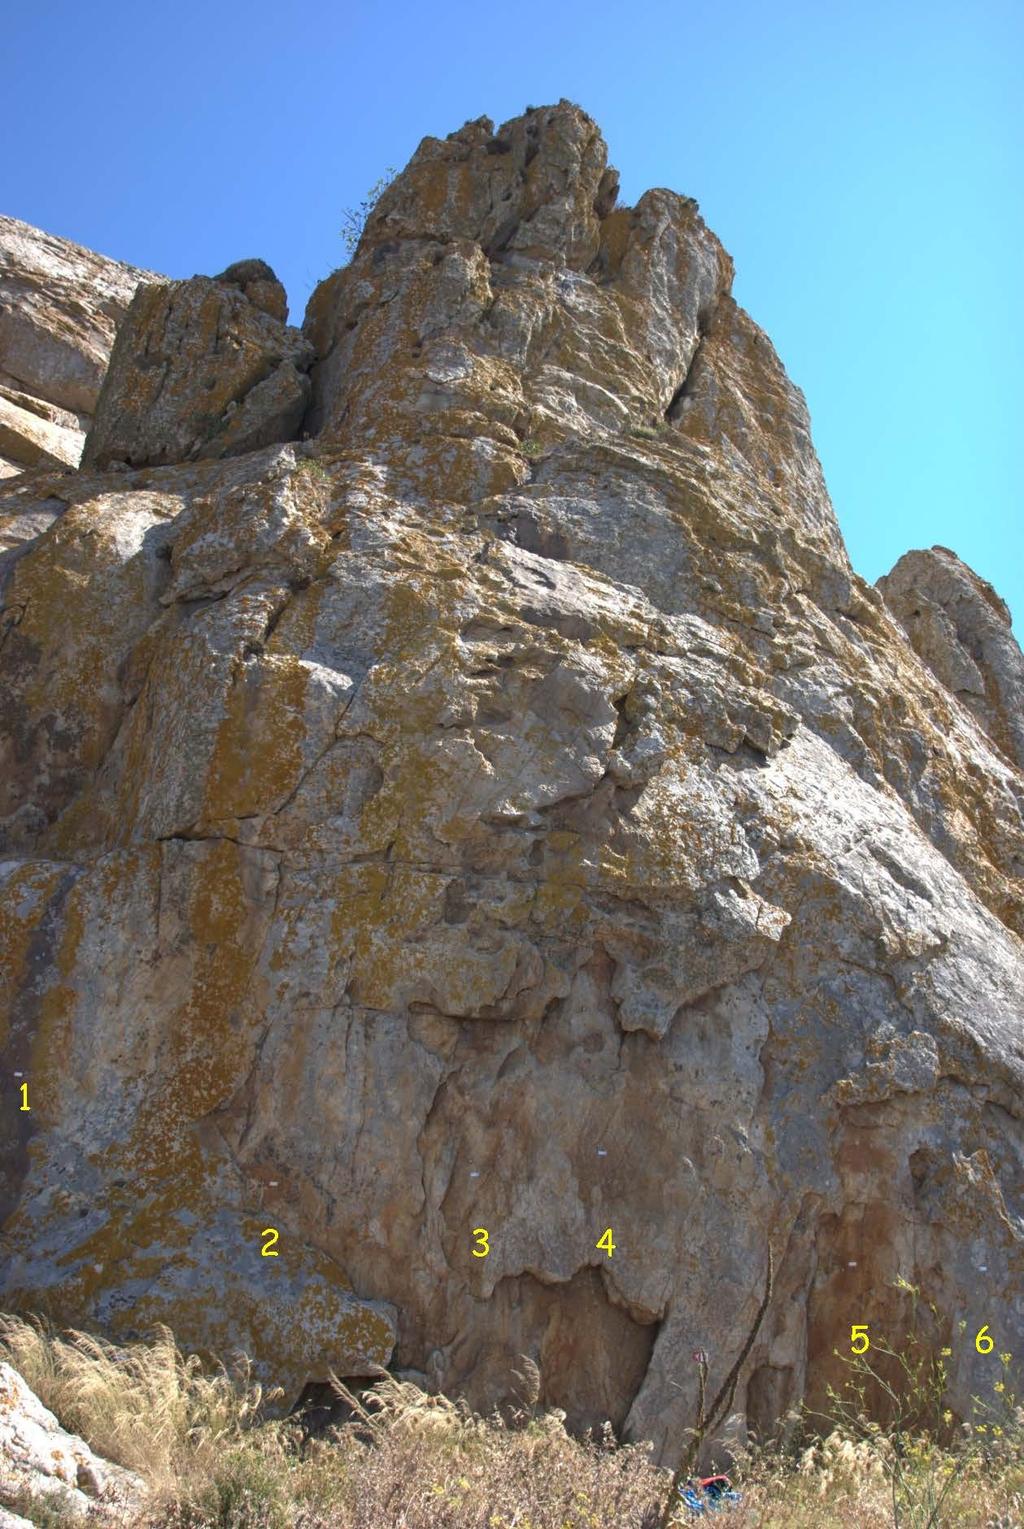 Πληροφορίες Ο τομέας 6 βρίσκεται στον αριστερό από τους δύο βράχους που ξεχωρίζουν όταν βλέπει κανείς το πεδίο του Εξωμβούργου.